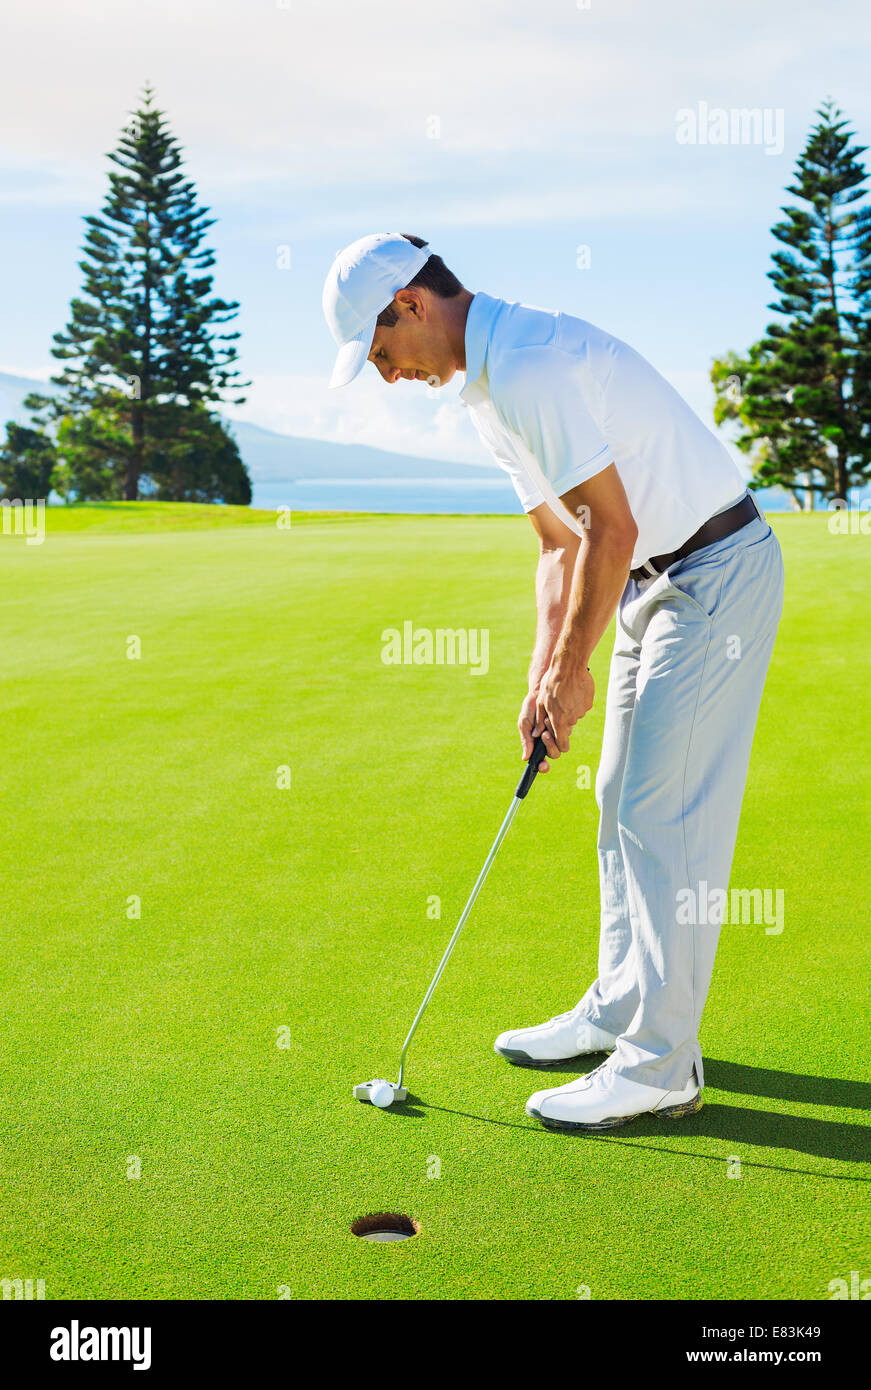 Golfer auf Putting-Green Golfball ins Loch zu schlagen Stockfoto